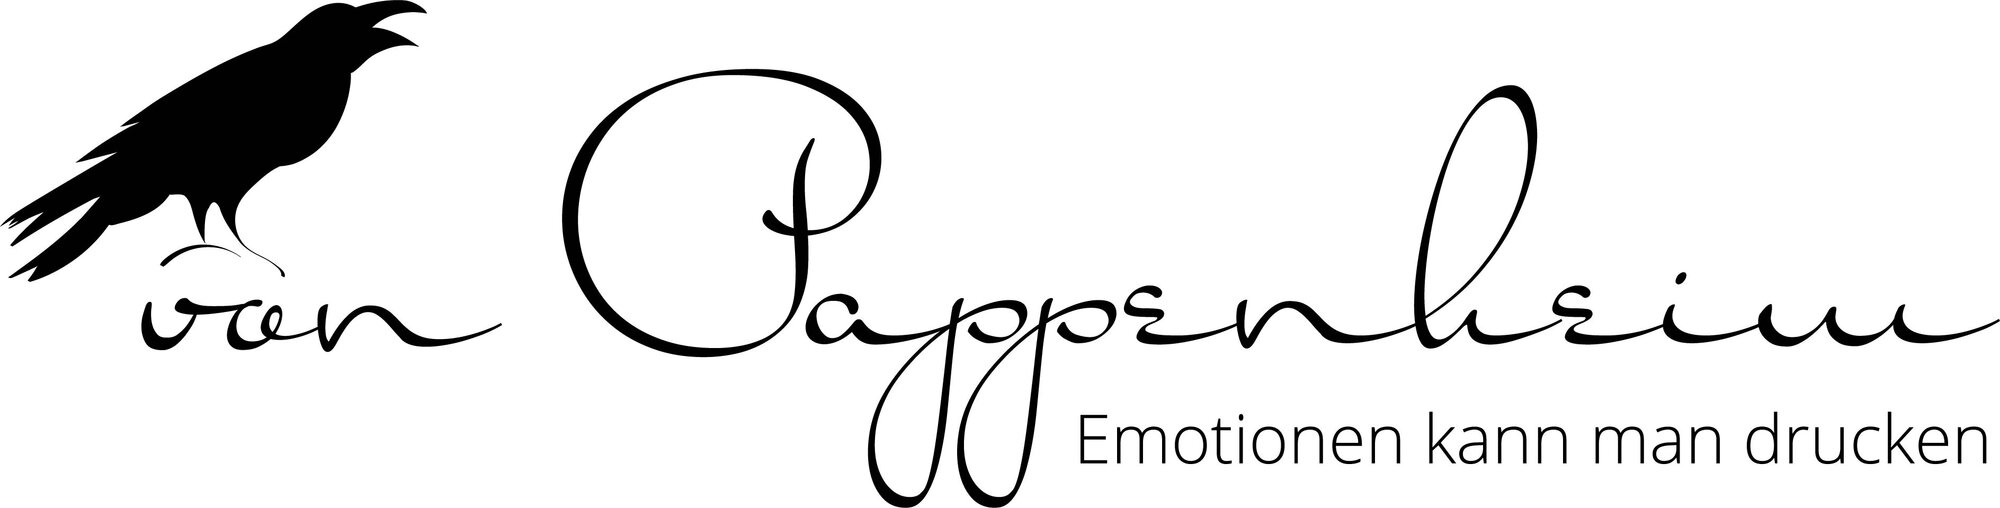 Rvp_Logo.Schreibschrift_Emotionen.jpg